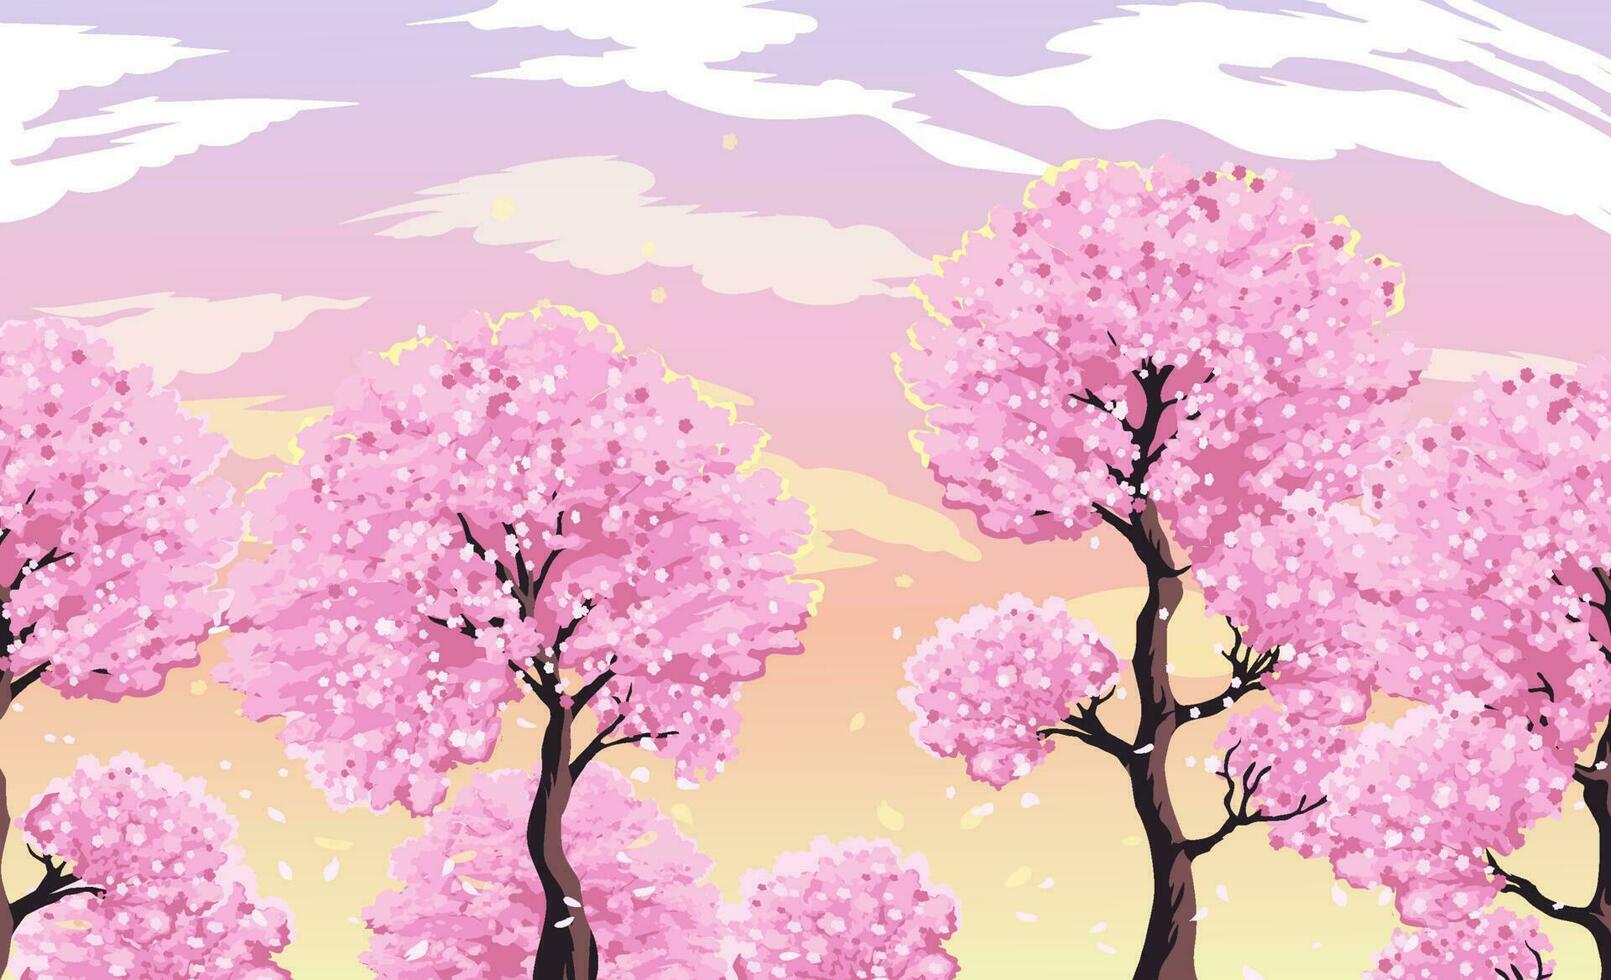 blomning sakura träd mot de kväll rosa himmel med moln. vektor